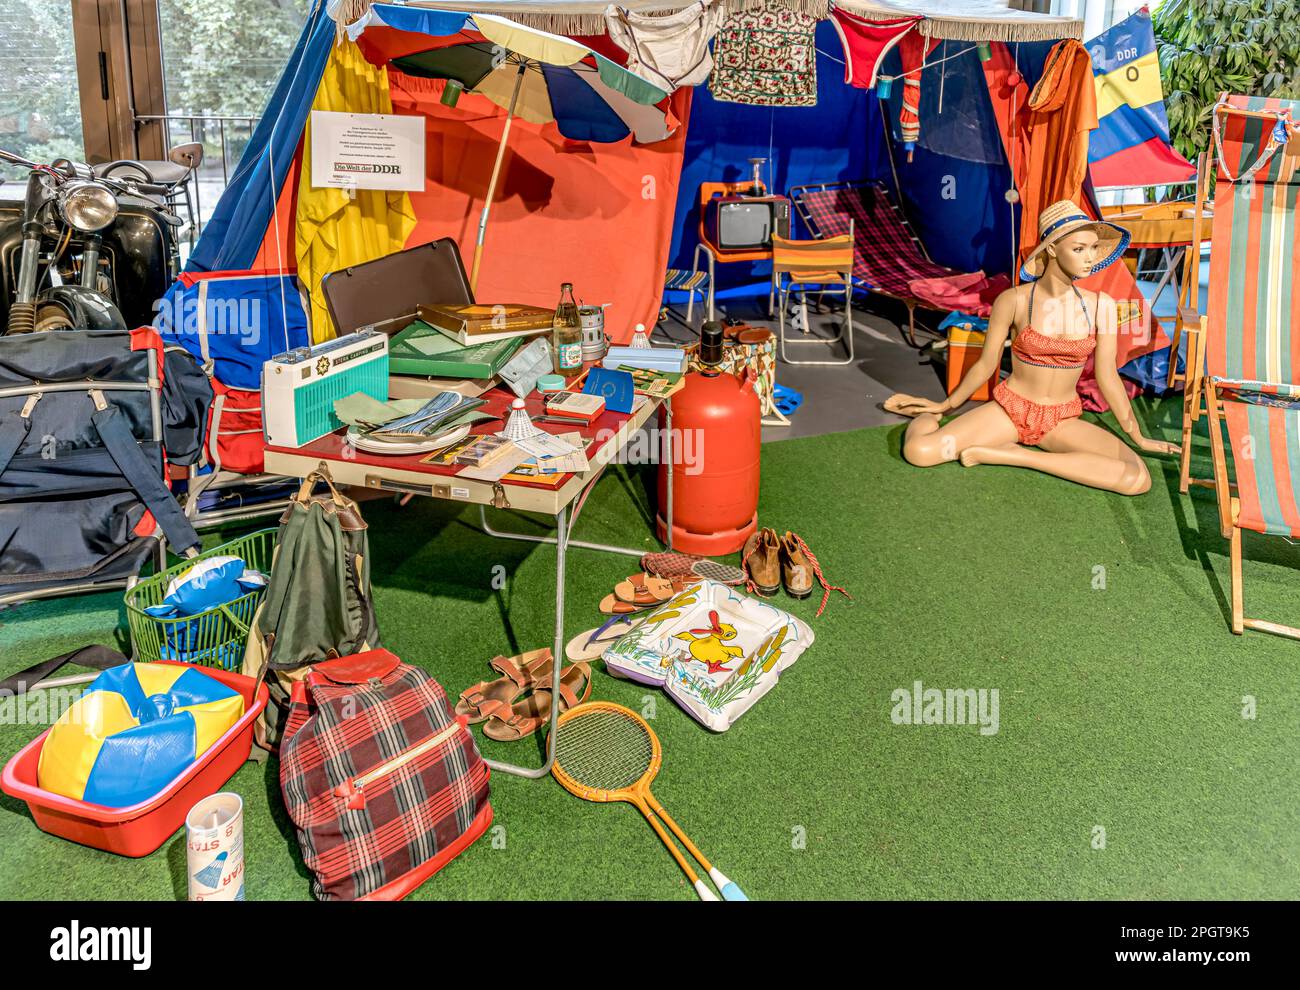 Équipement de camping typique de la RDA dans le musée 'le monde de la RDA' Dresde, Allemagne Banque D'Images